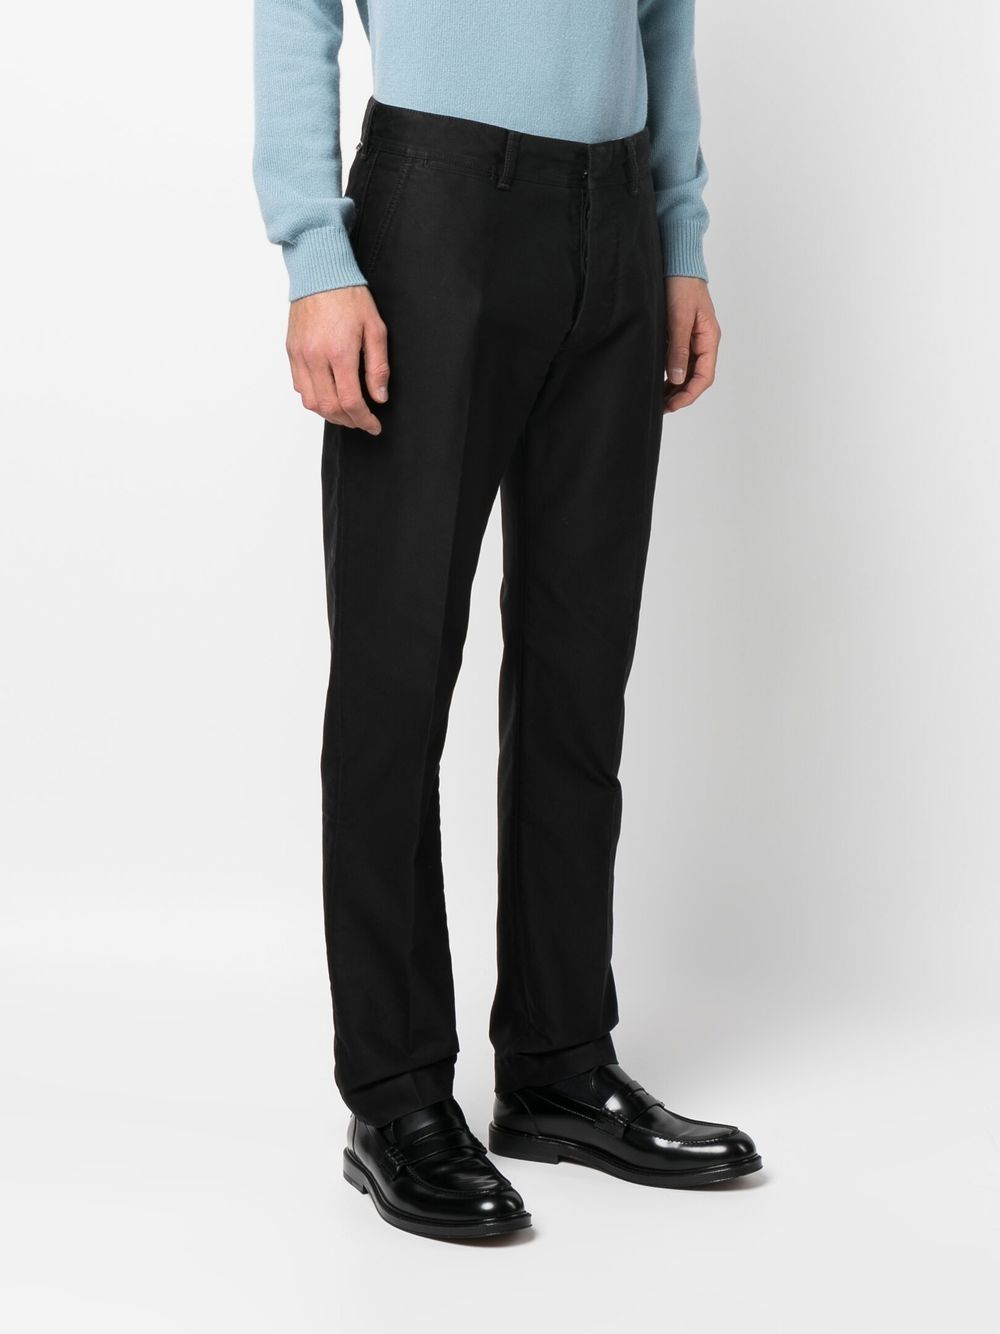 经典黑色贴身修身款男士棉质长裤